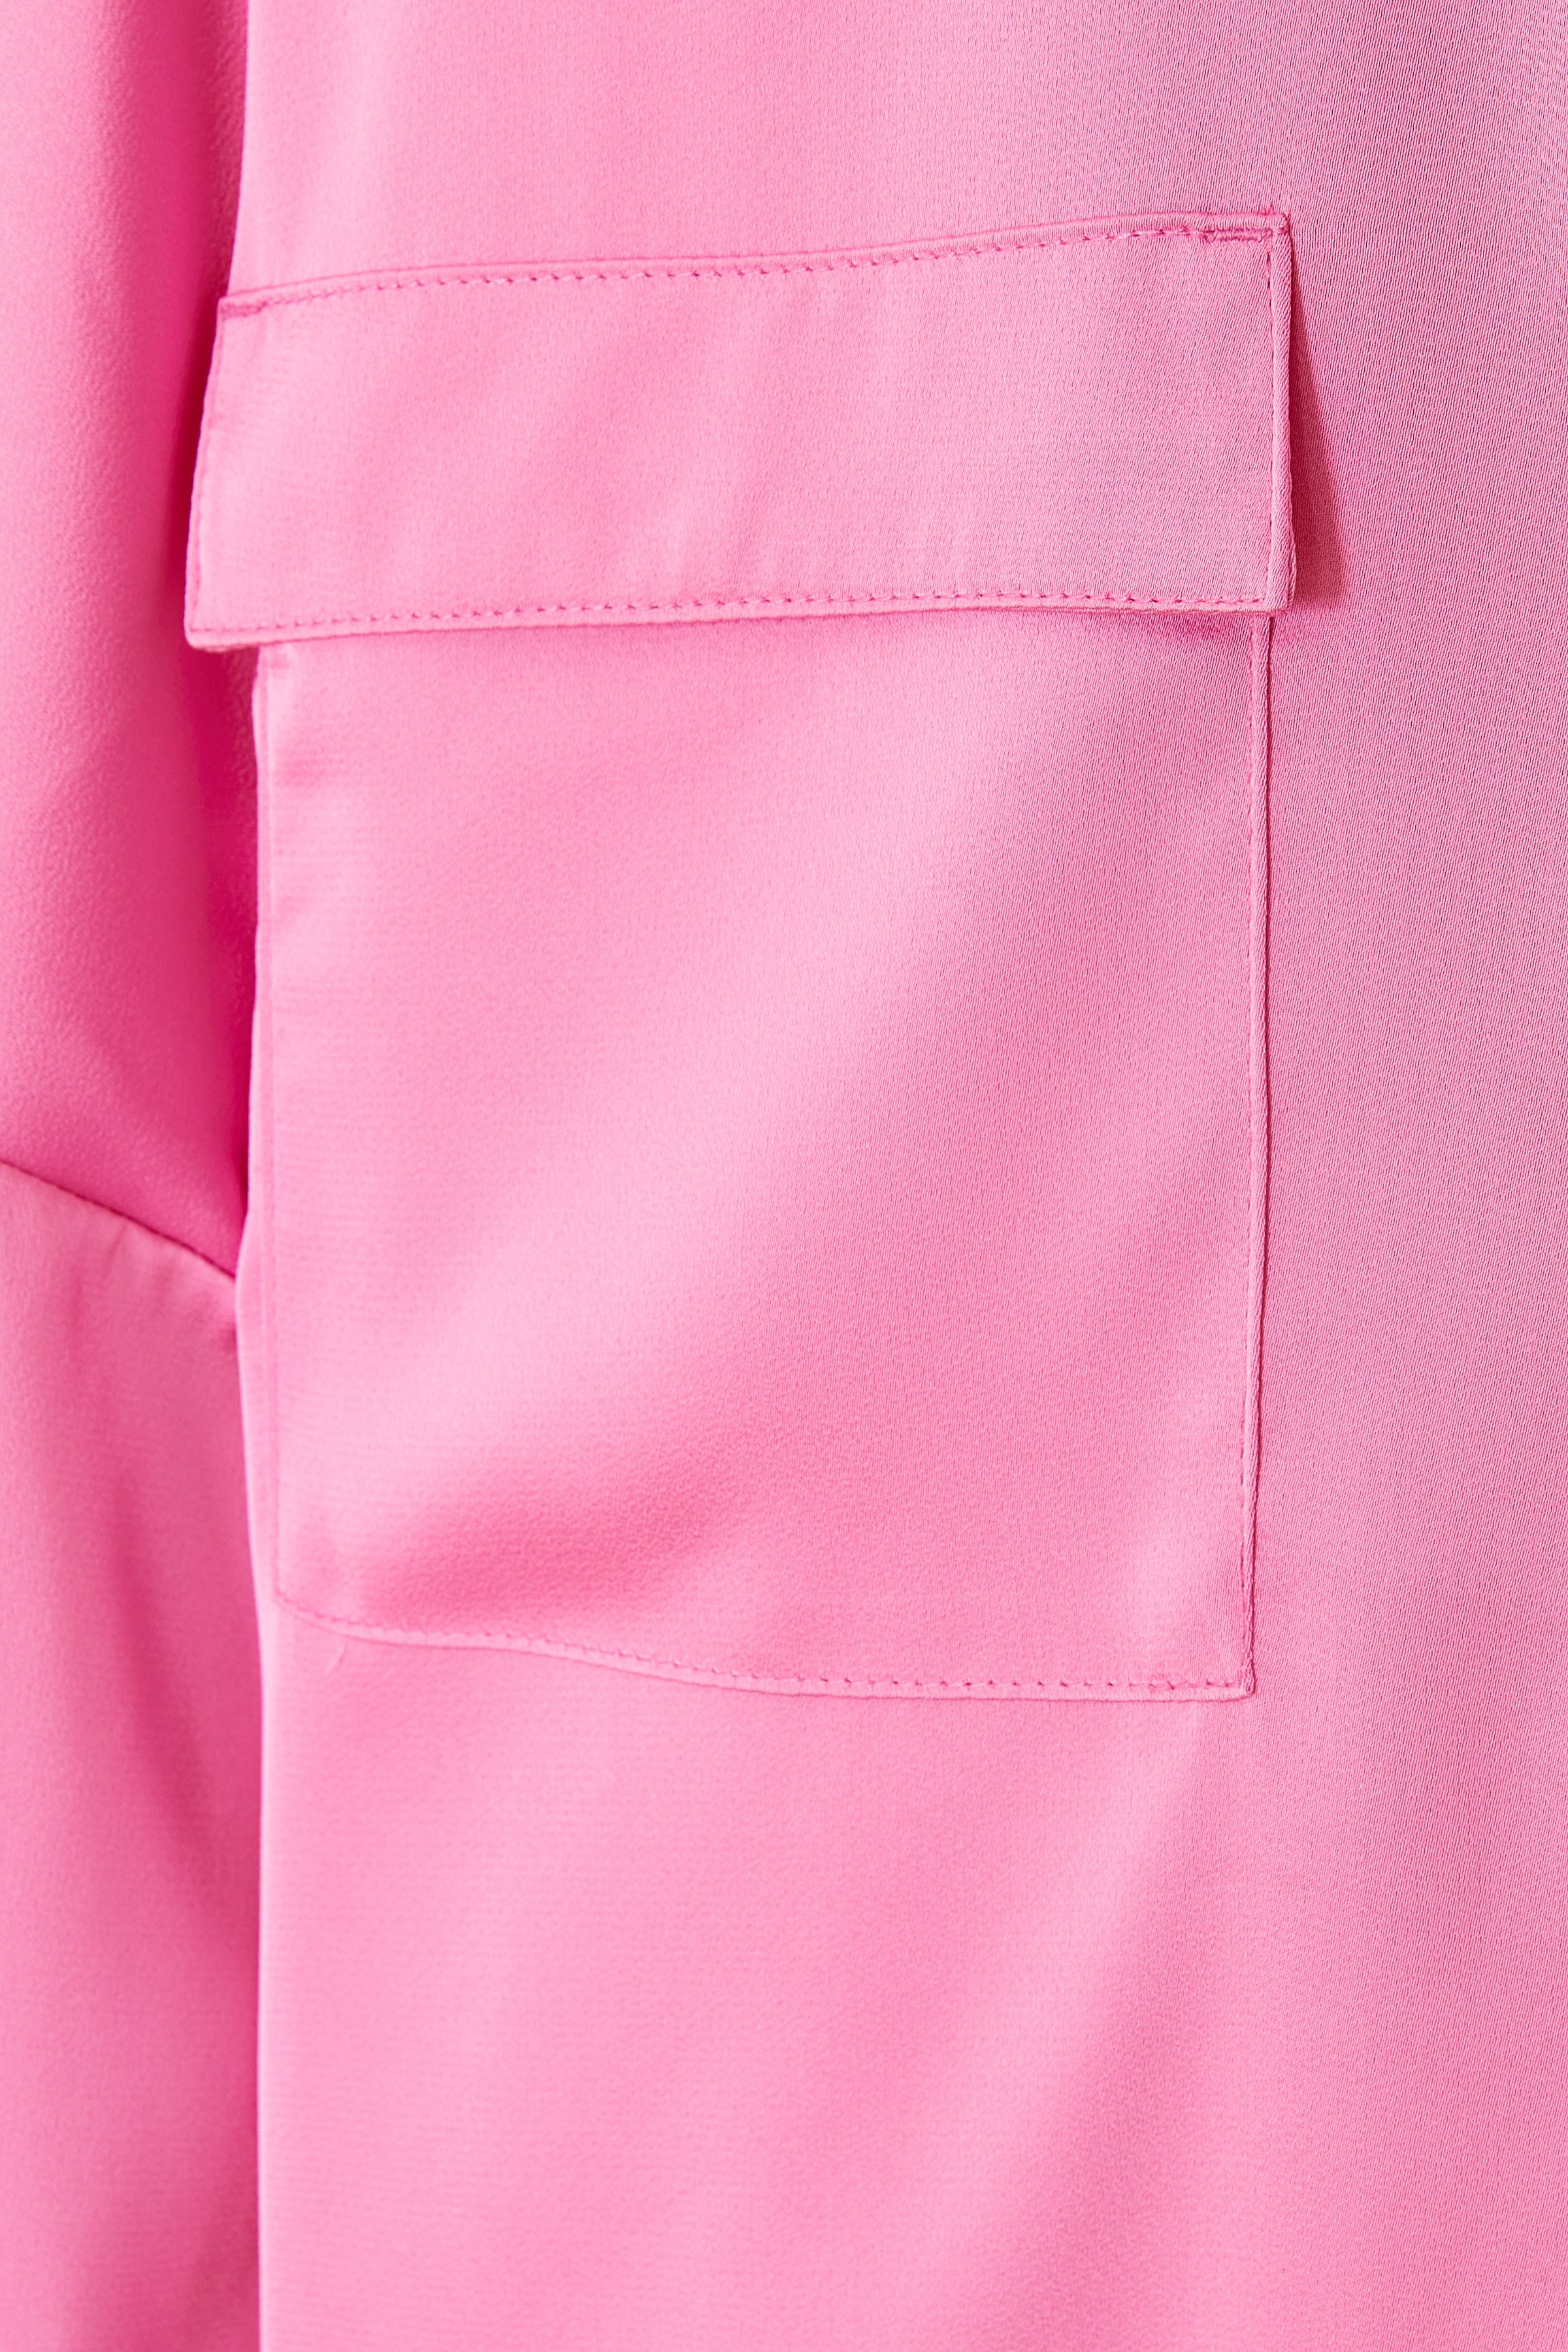 CKS Dames - SANZA - blouse lange mouwen - roze